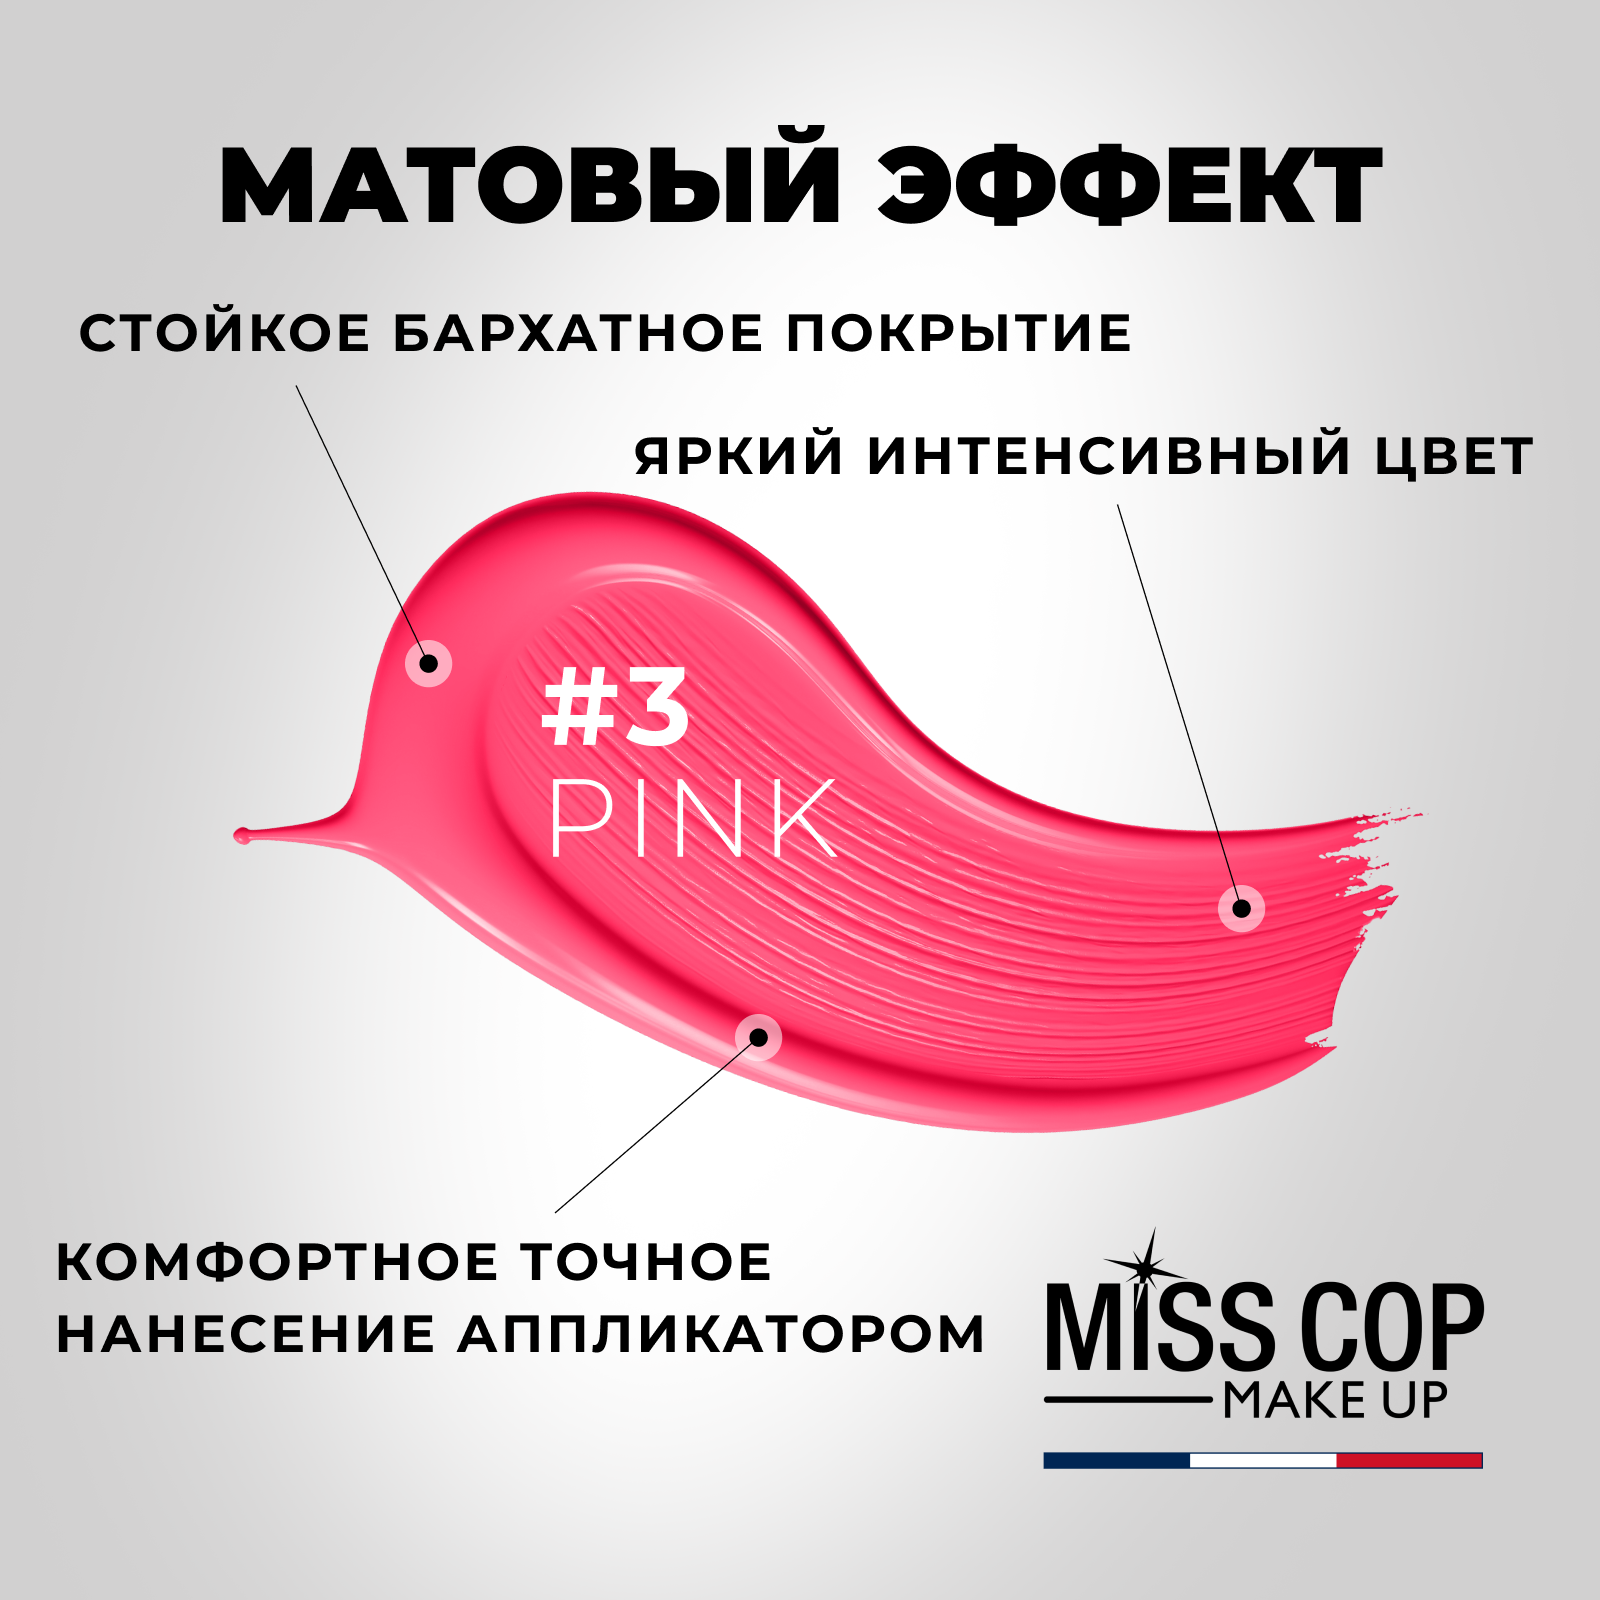 Жидкая губная помада Miss Cop матовая стойкая розовая Франция цвет 03 Pink 2 мл - фото 3